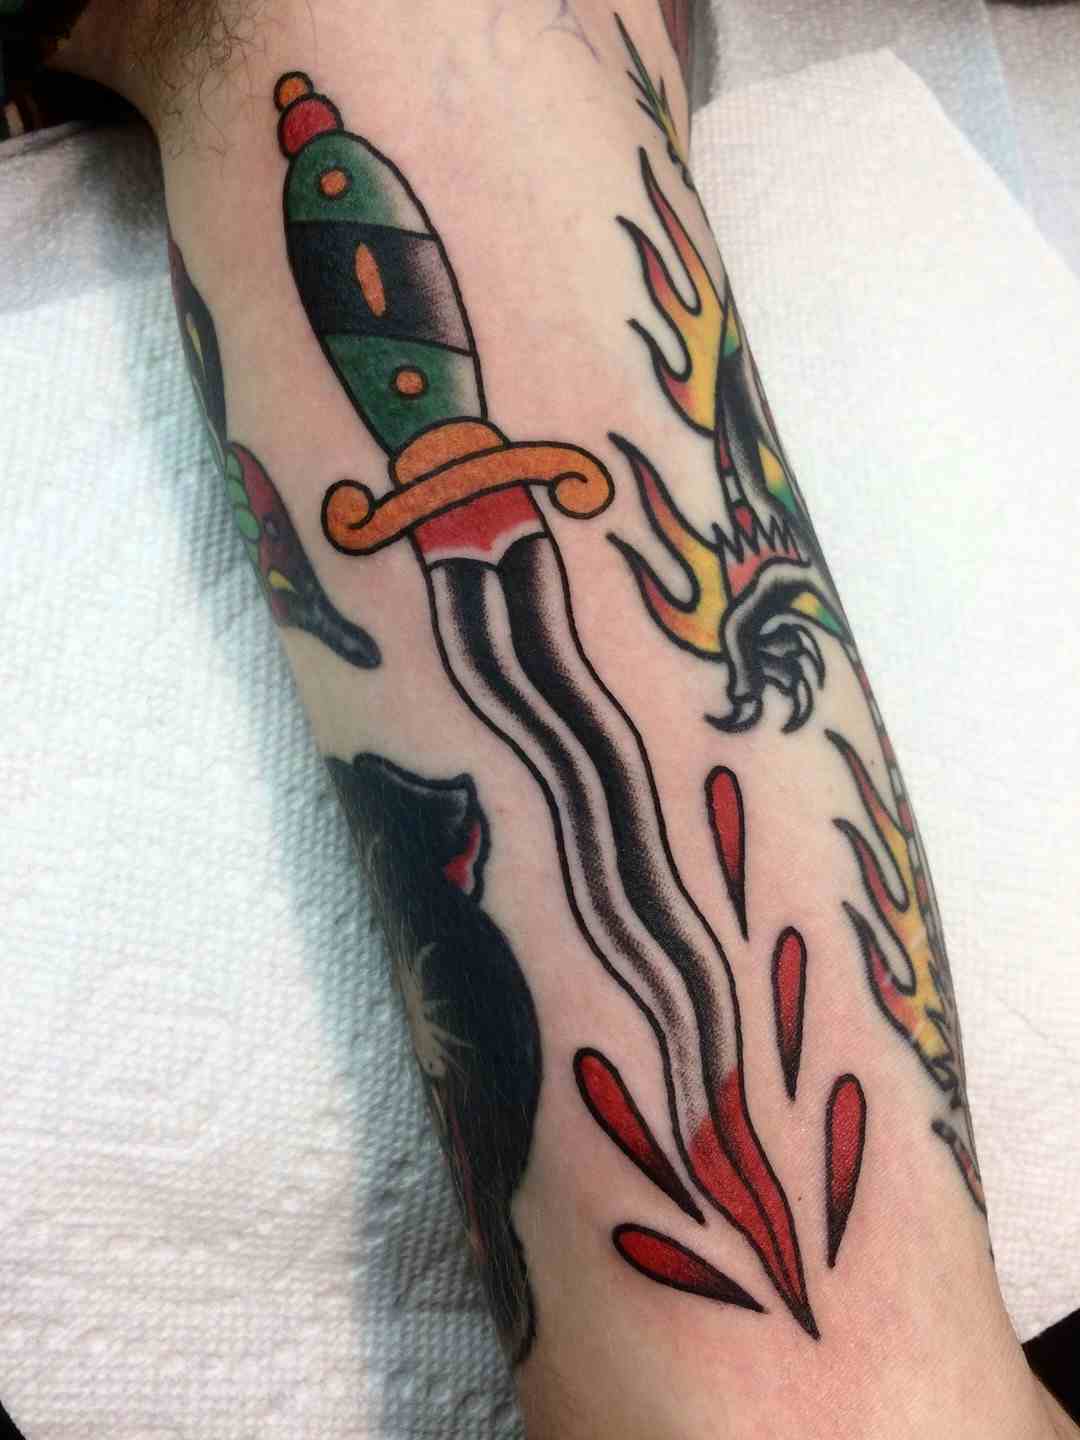 Dagger blood drop tattoo